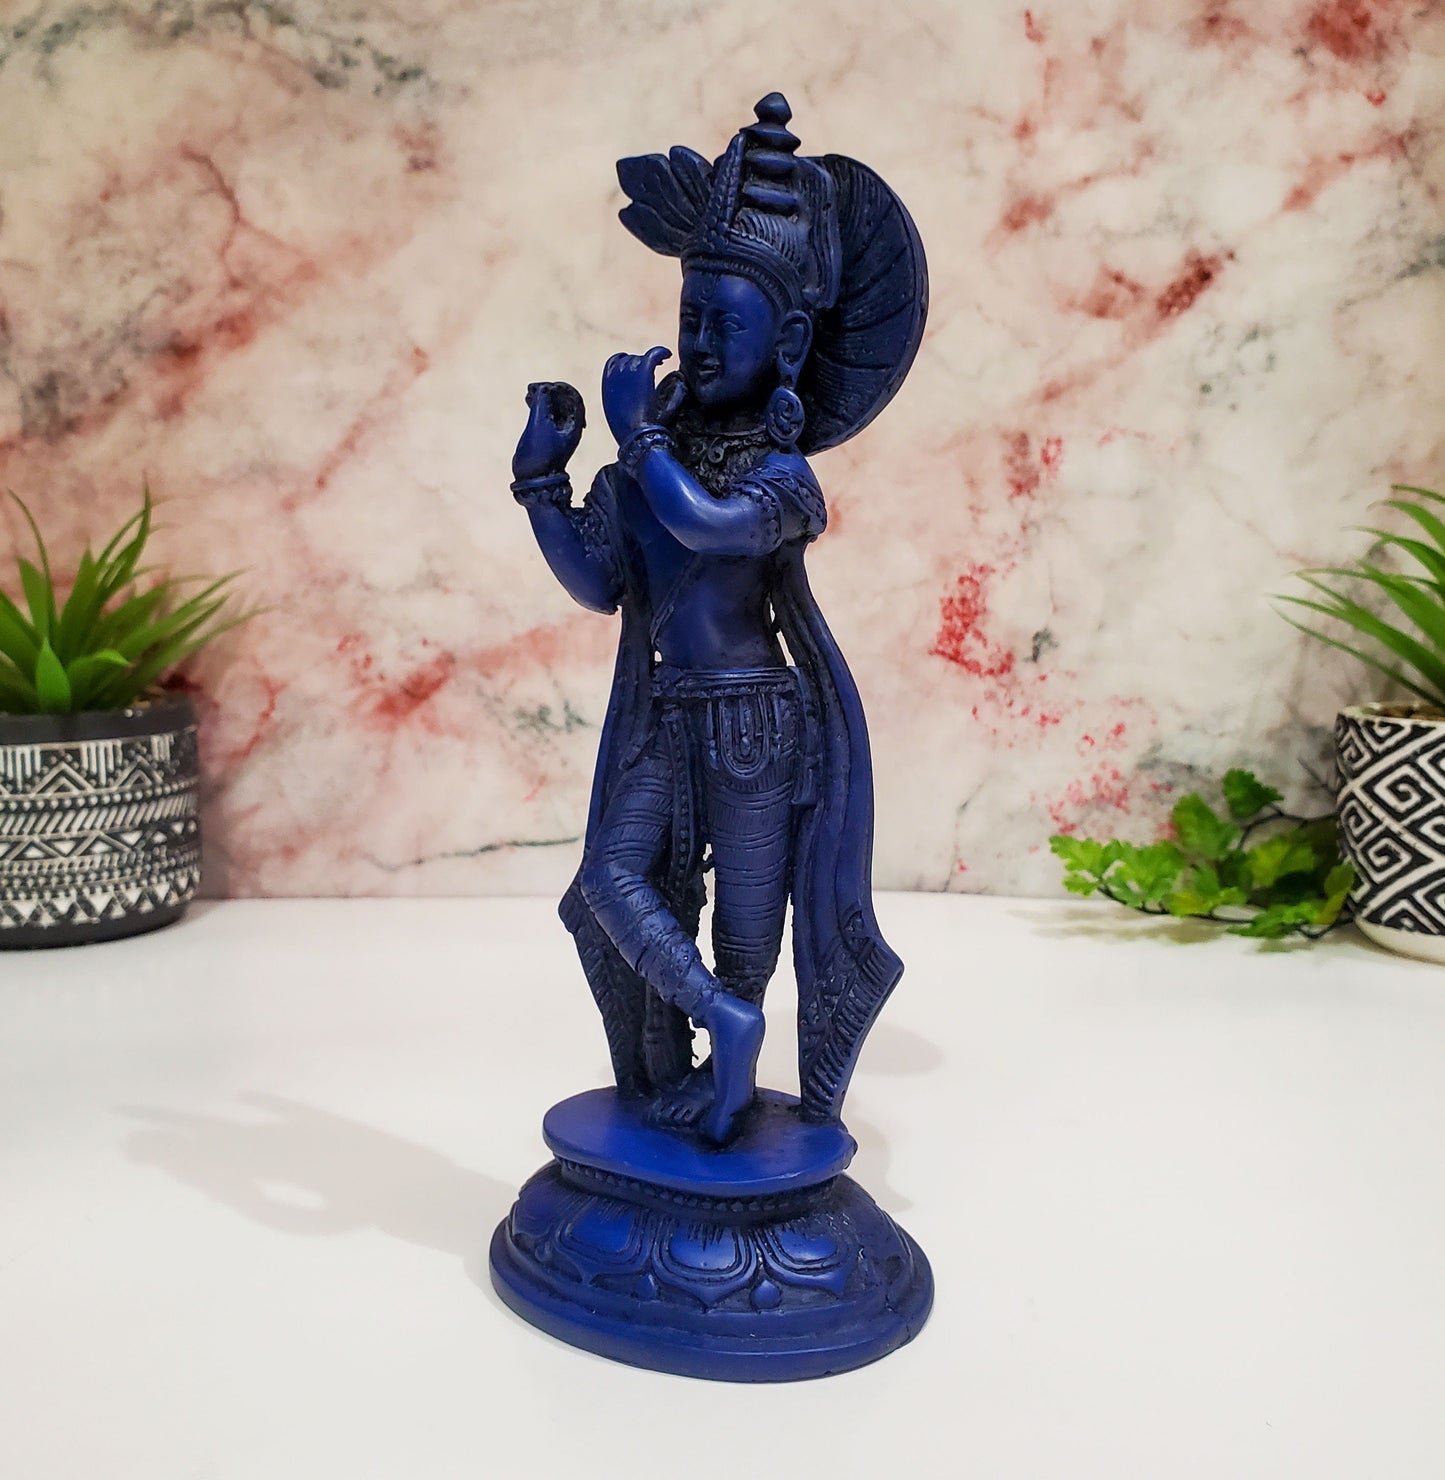 Blue Krishna Statue | Resin Cast Royal Blue Krishna Statue Figurine 9" Tall